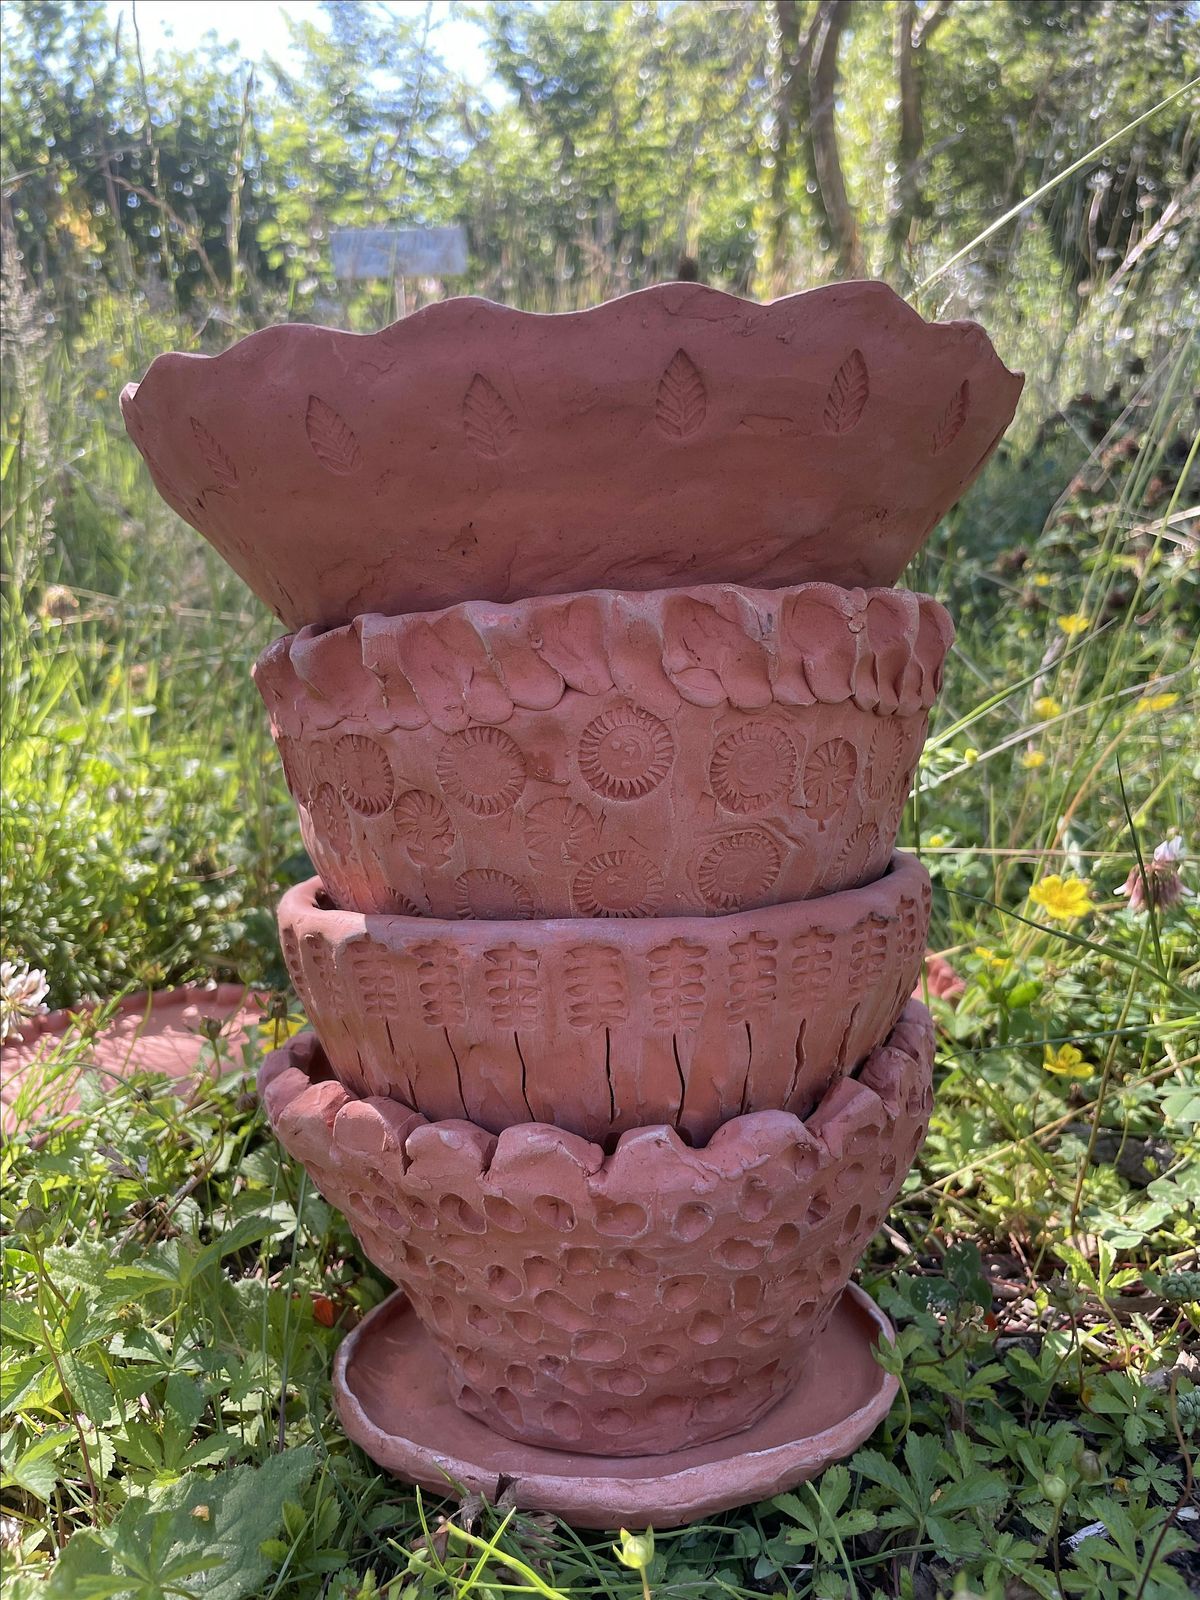 Terracotta pot making, Windsor Great Park, Thursday 10 October